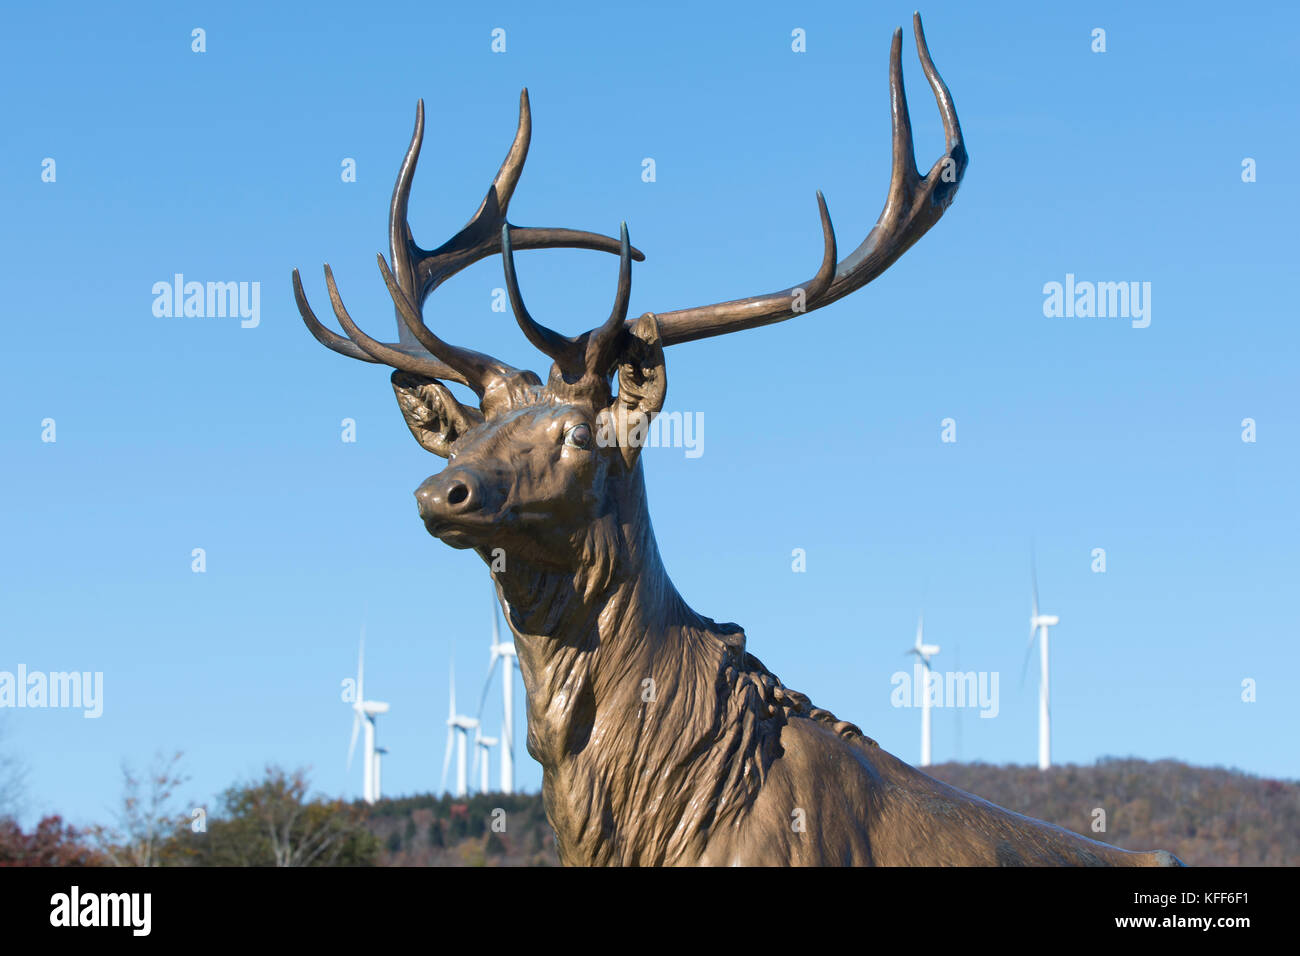 Estatua de un ciervo macho (buck) con aerogeneradores en el fondo en el oeste, Massachusetts, EE.UU. Foto de stock